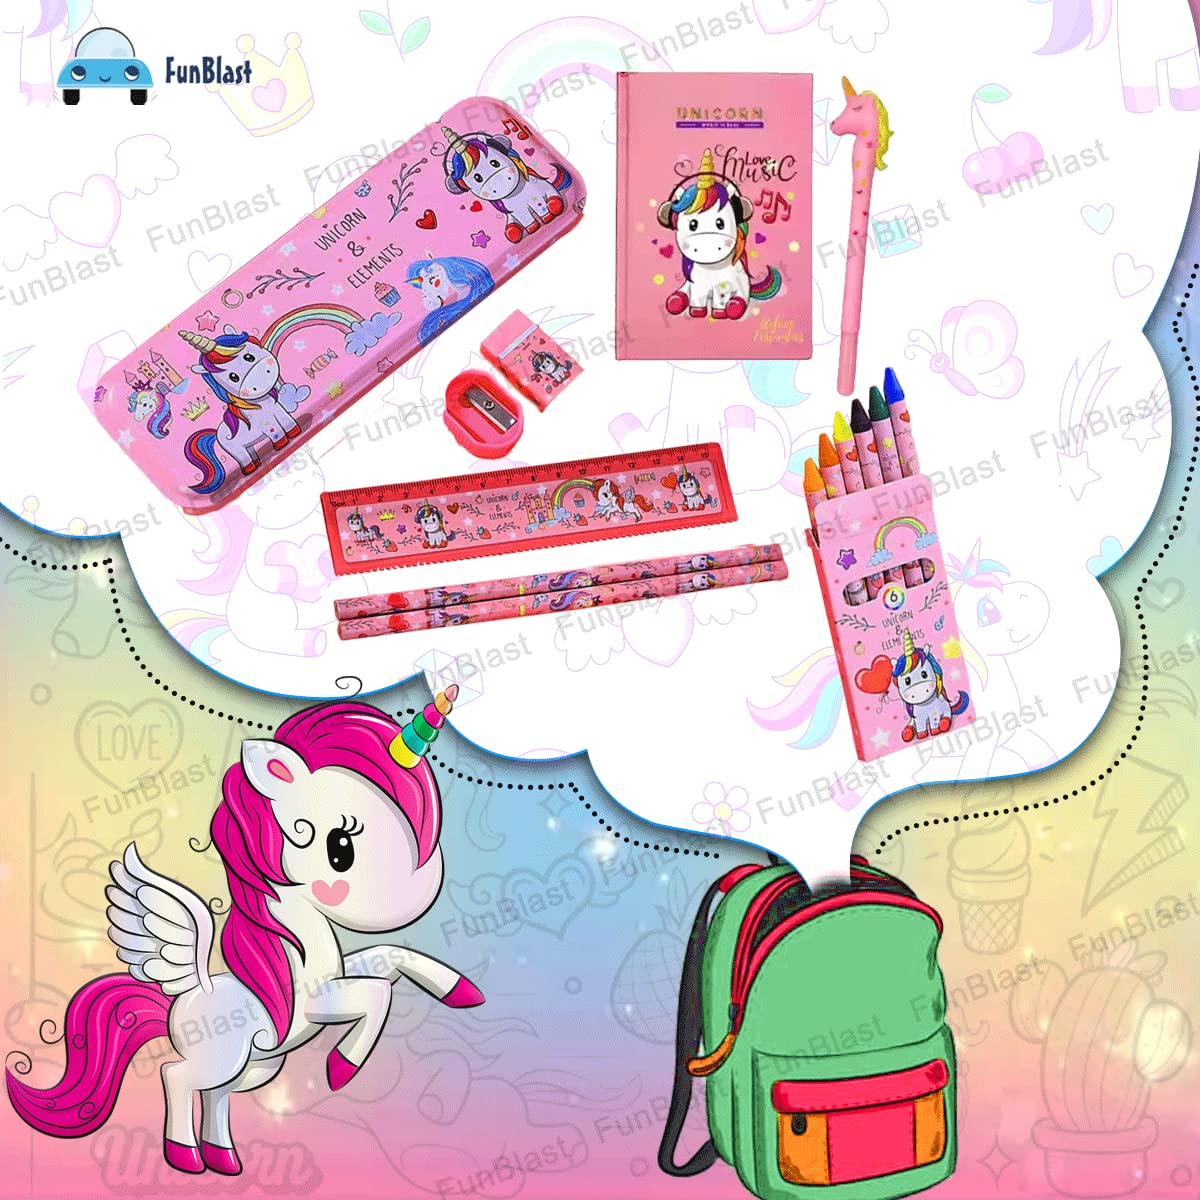 Unicorn Stationary Kit for Girls Pencil Pen Book Eraser Sharpener